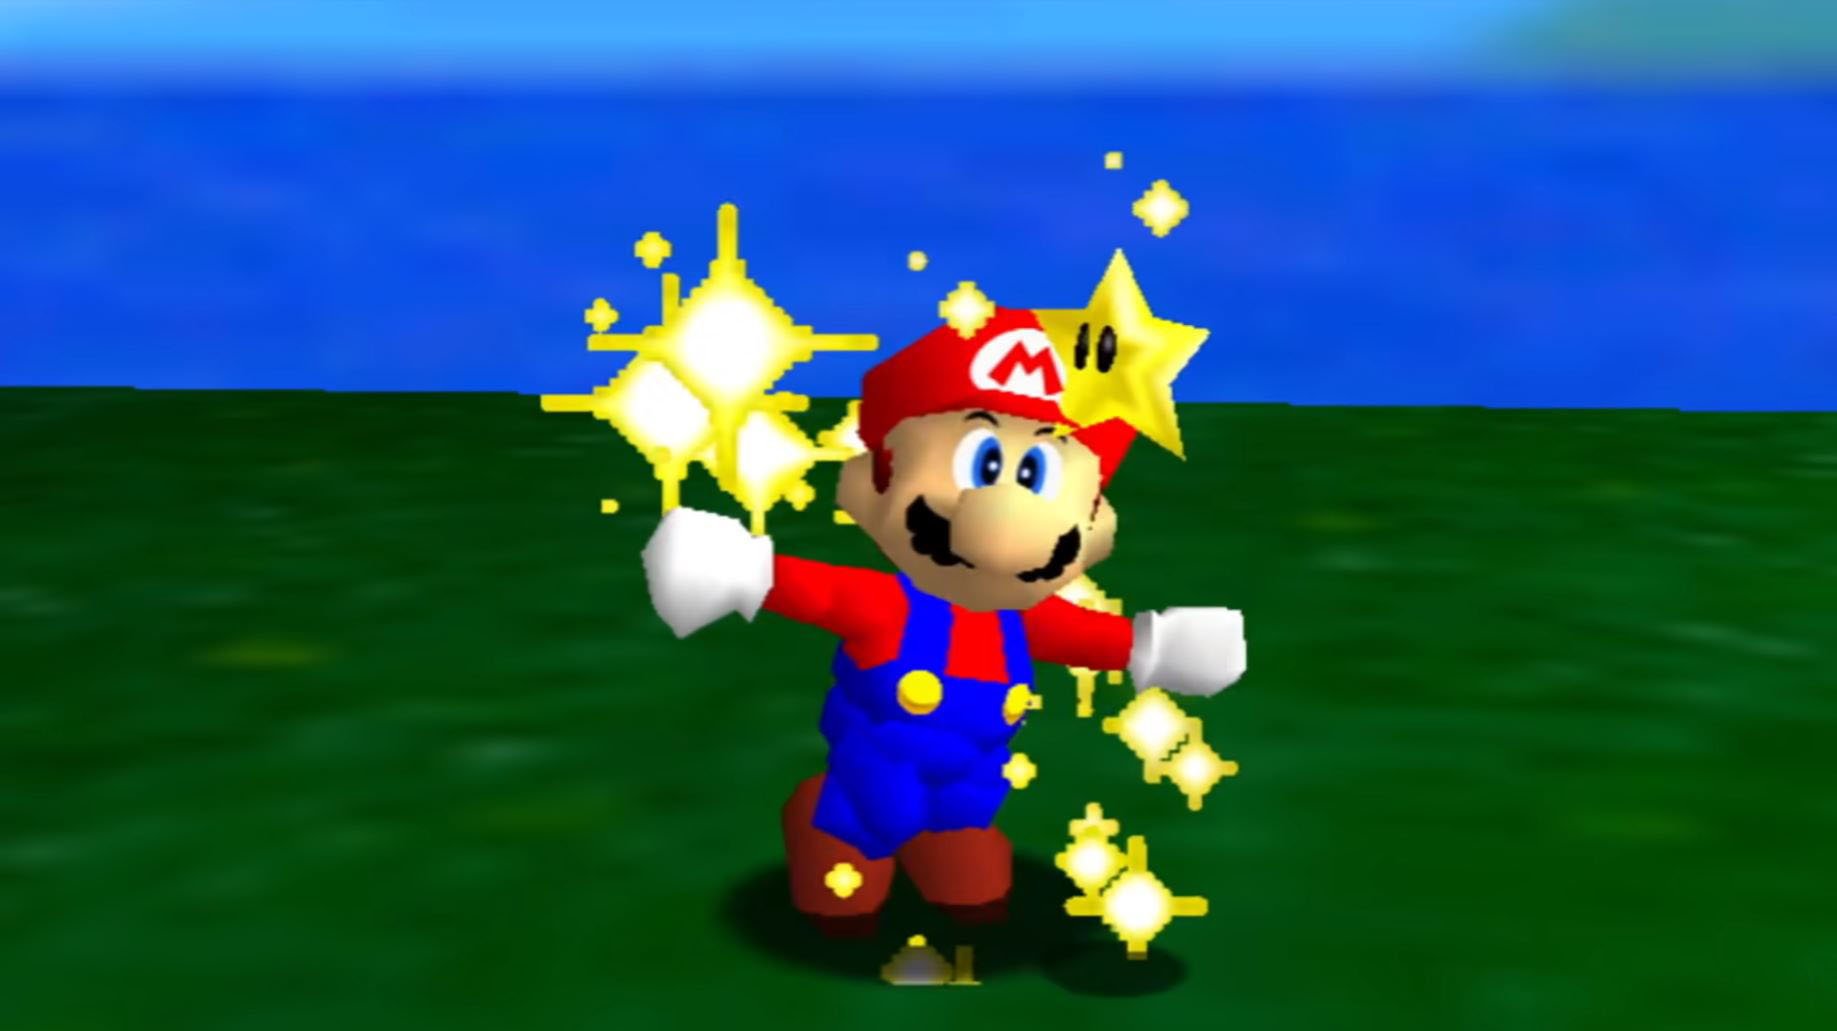 Bob-omb Battlefield Coin Star - Super Mario 64 Guide - IGN